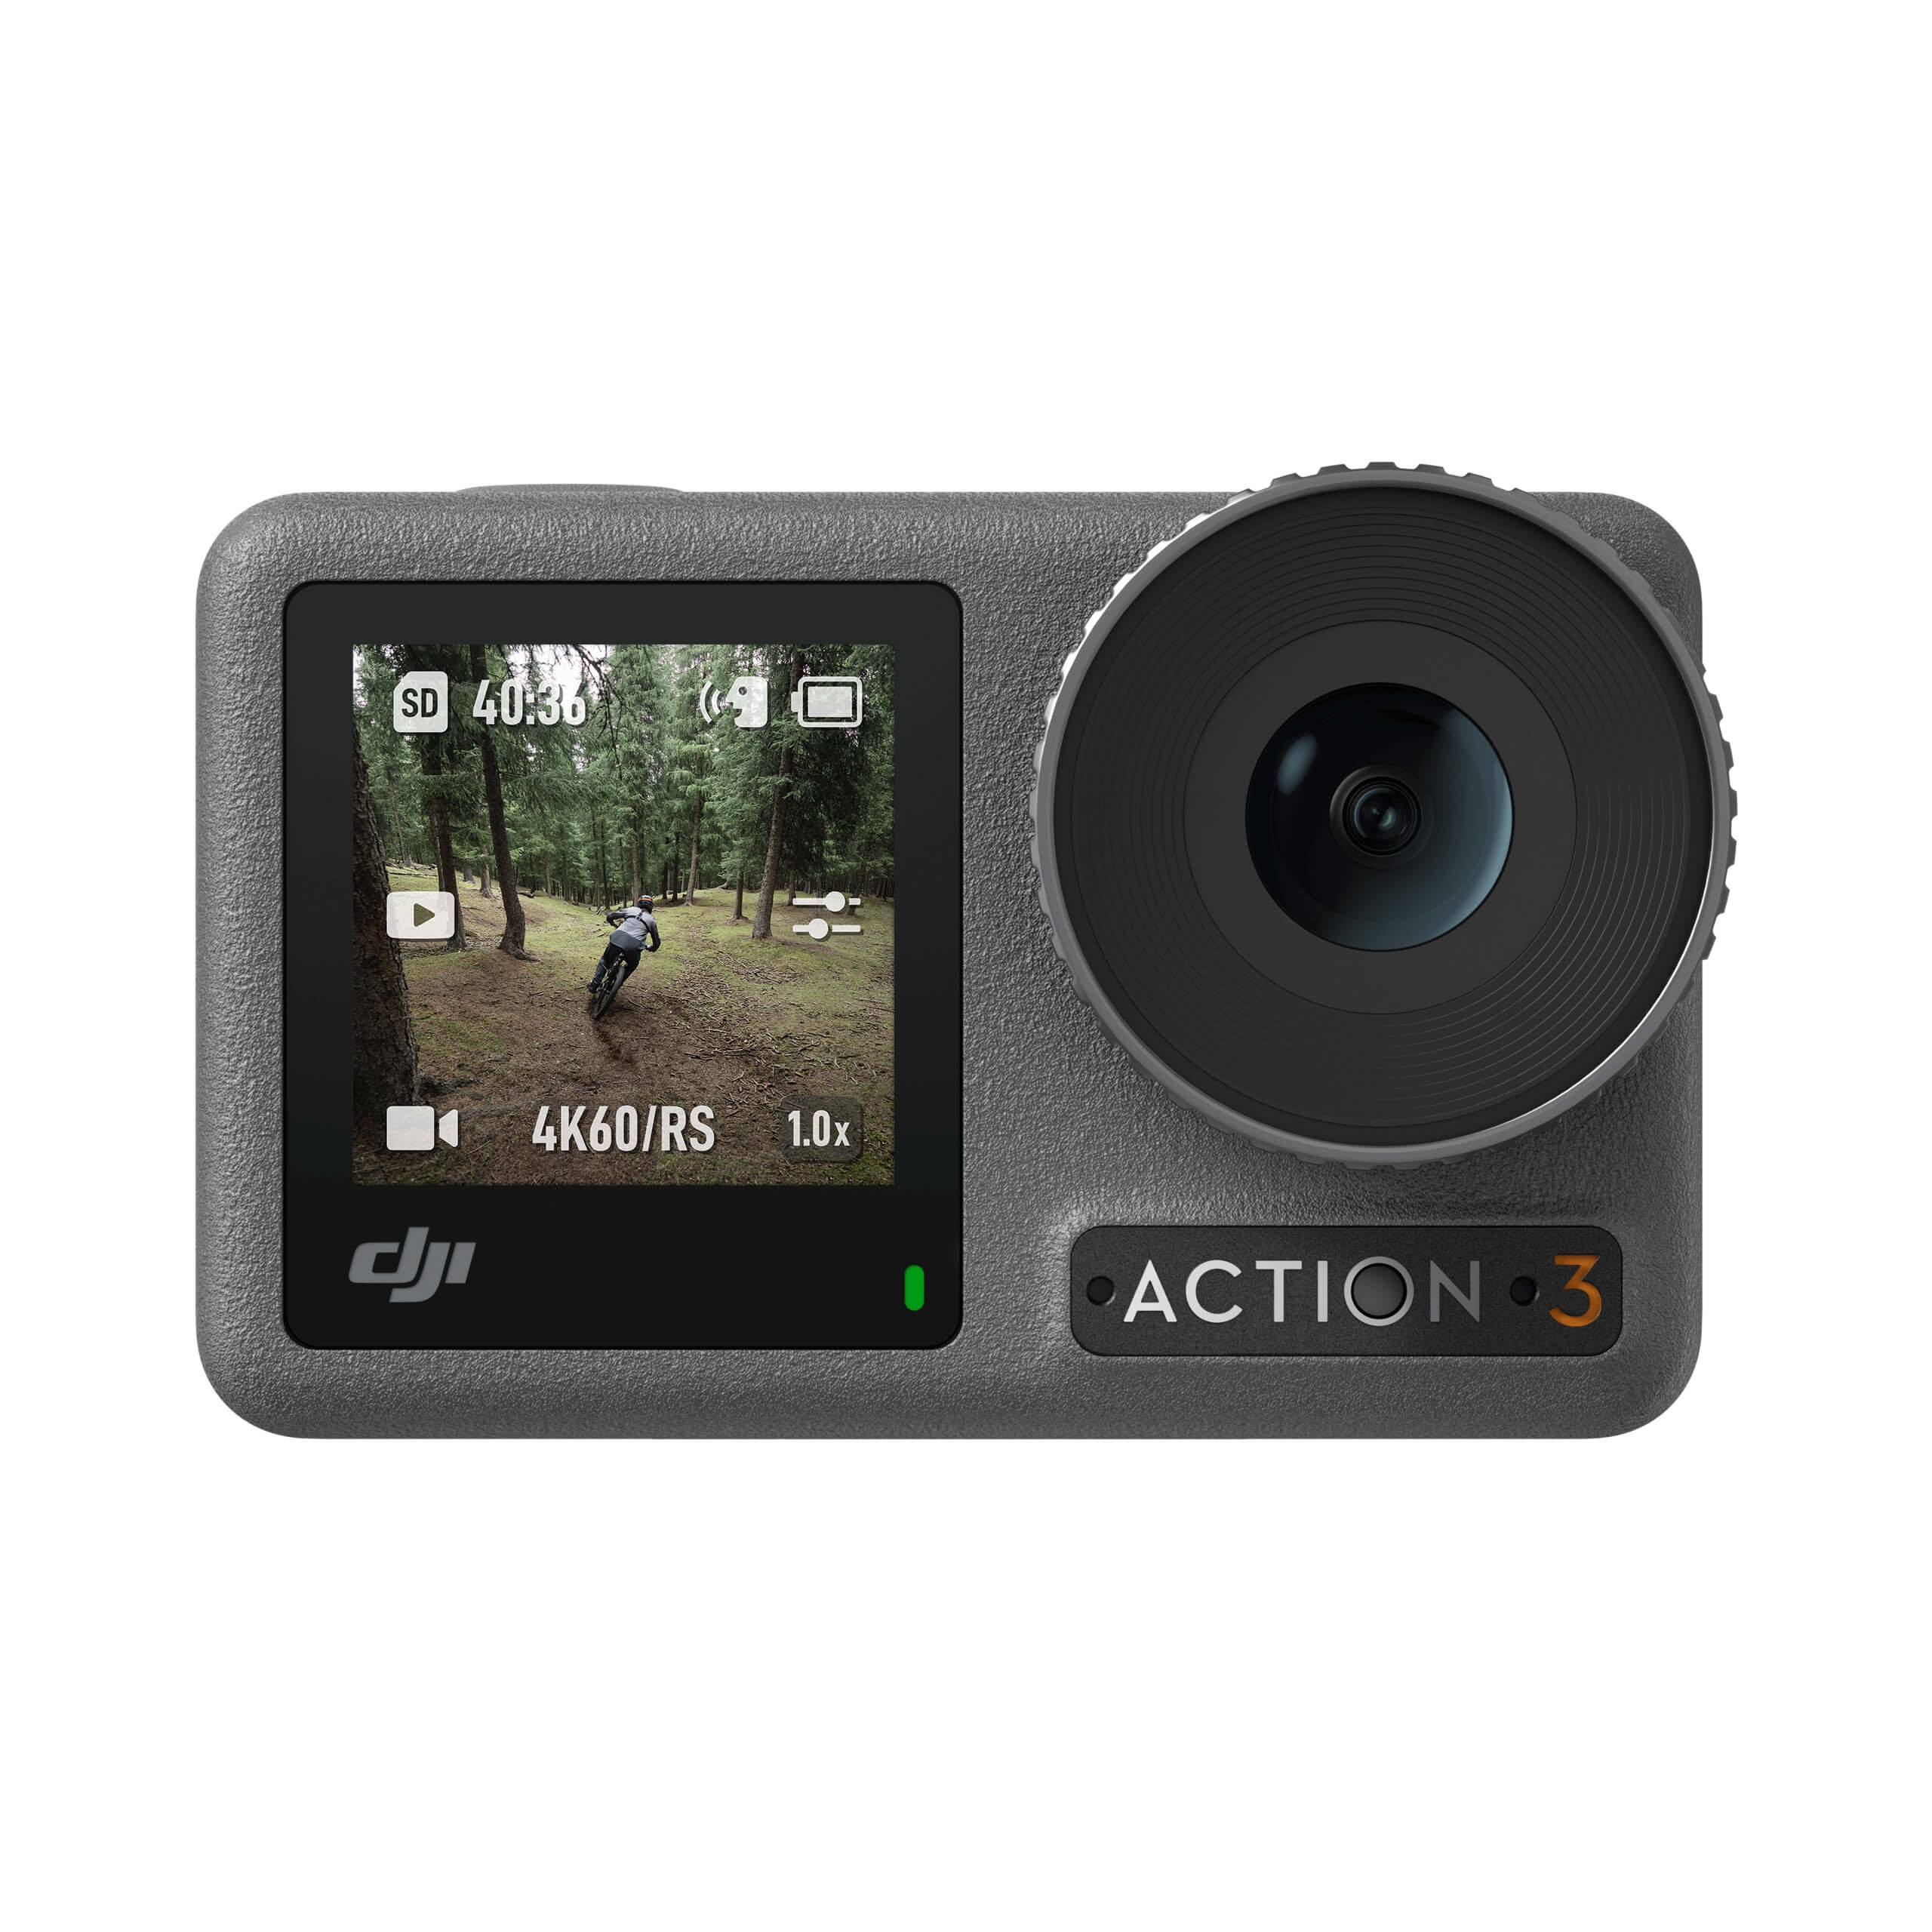 Peut-on utiliser les accessoires GoPro avec la caméra DJI Osmo